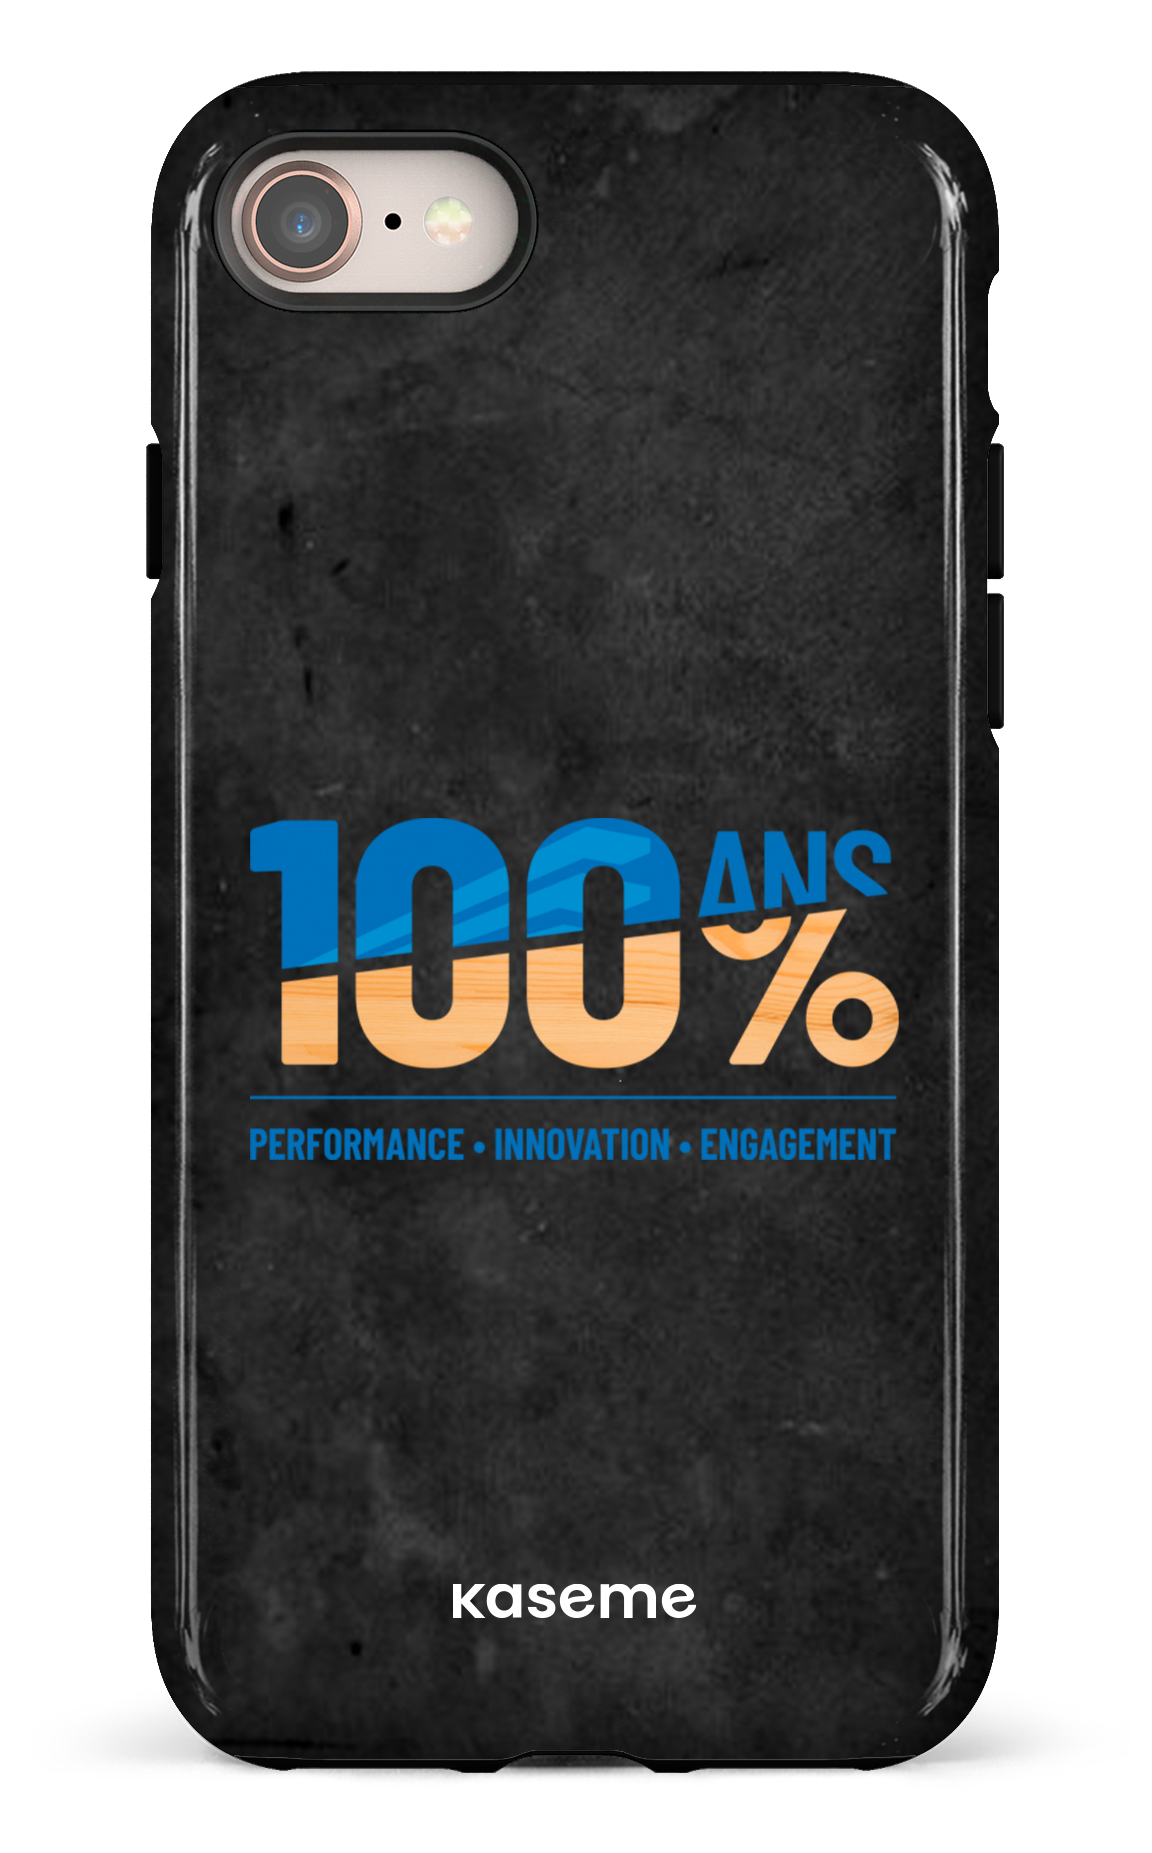 100ans BID Group - iPhone 8